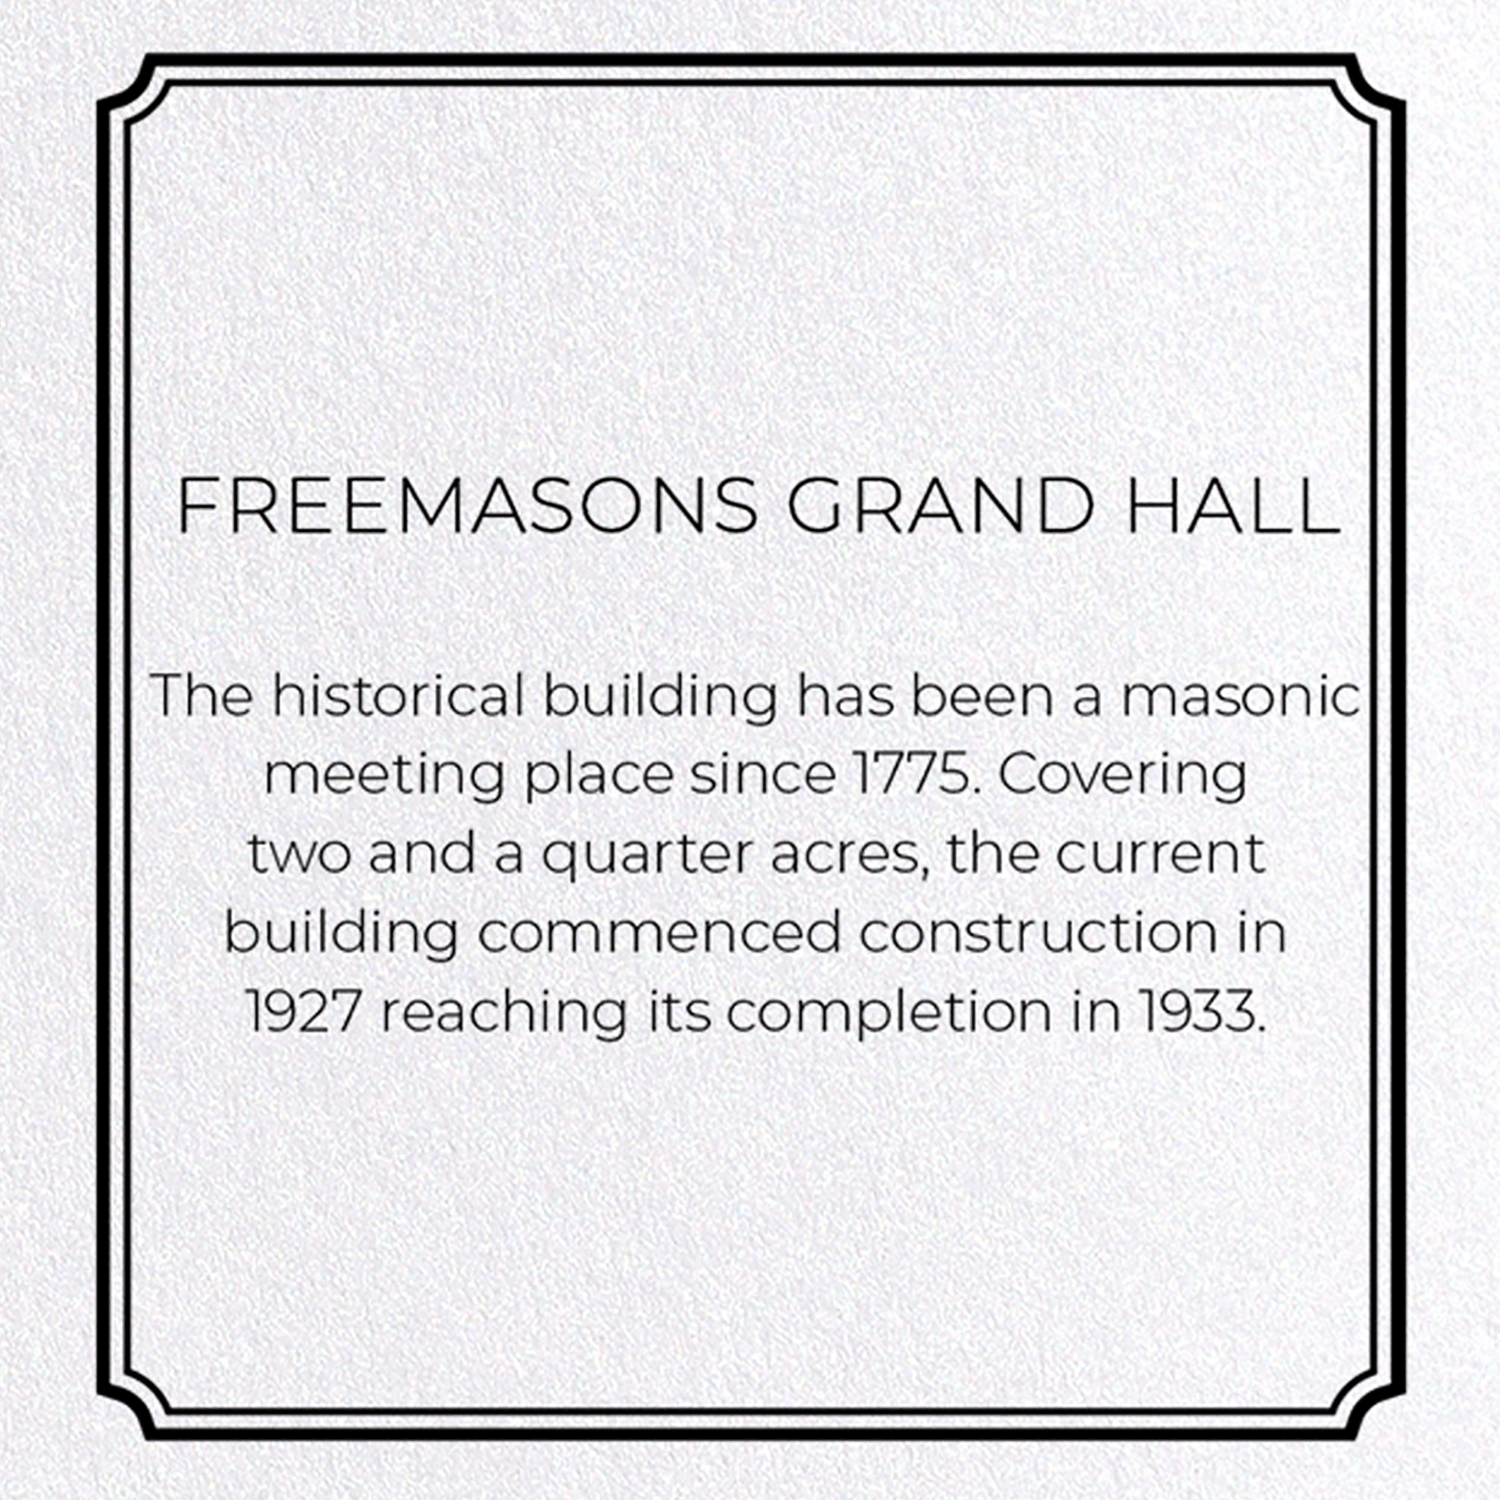 FREEMASONS GRAND HALL